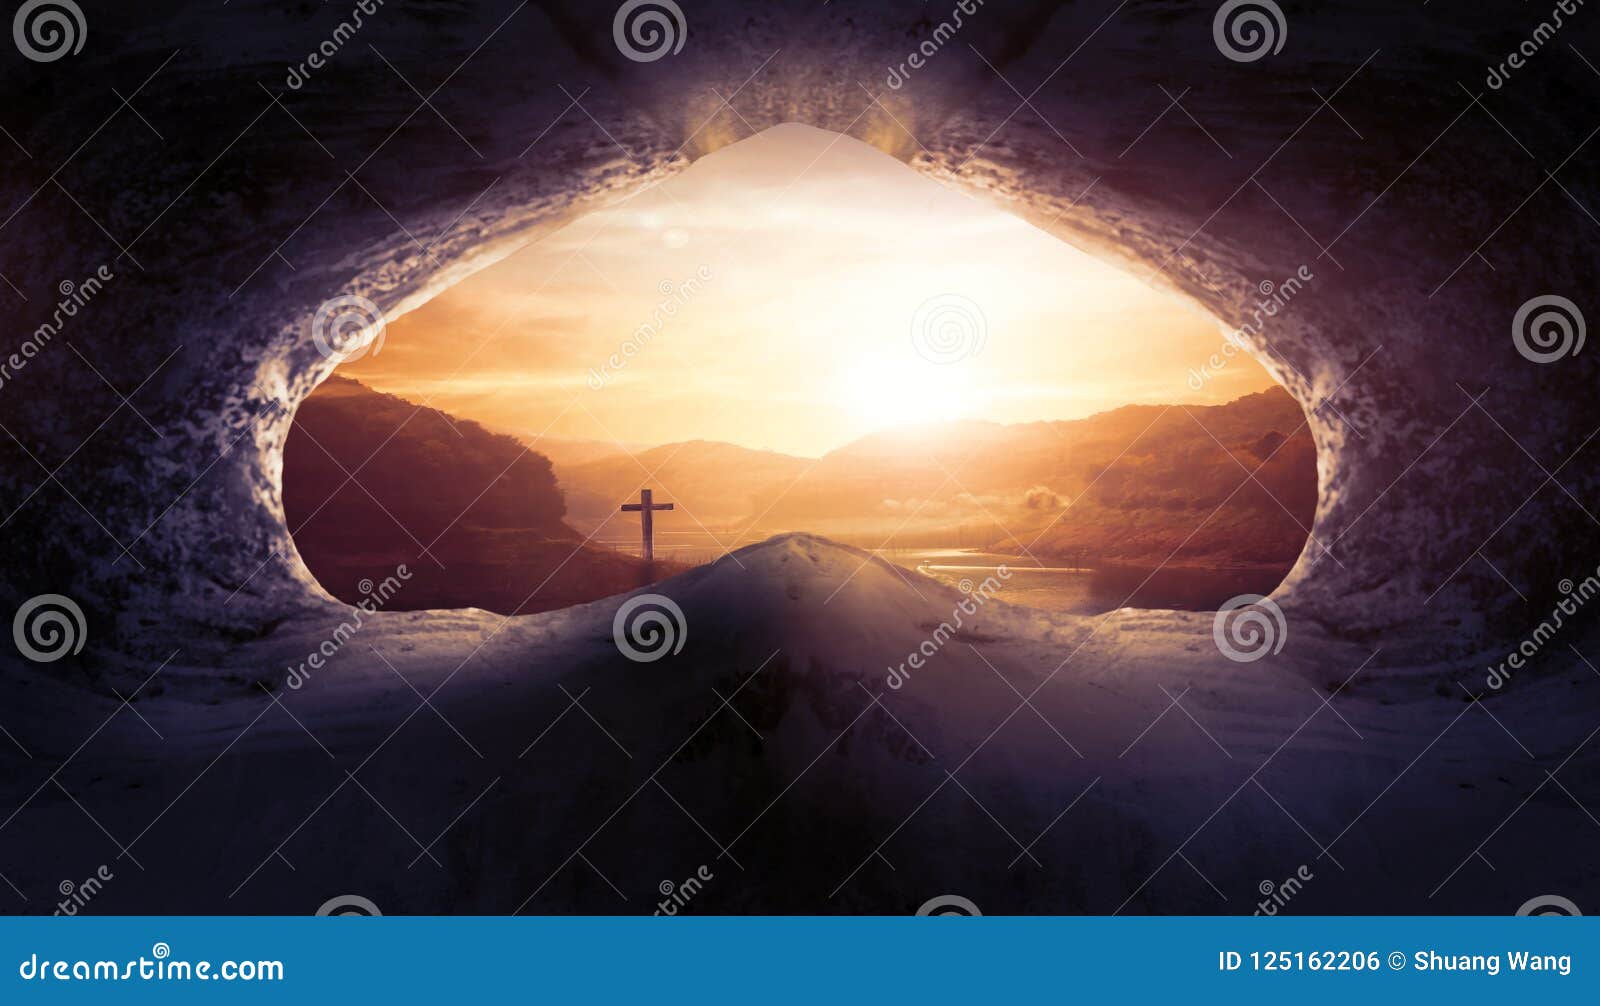 Concepto de Jesus Christ Birth Death Resurrection: Tumba vacía con la crucifixión en la salida del sol. Concepto del día del ambiente mundial: fondo hermoso del papel pintado del prado